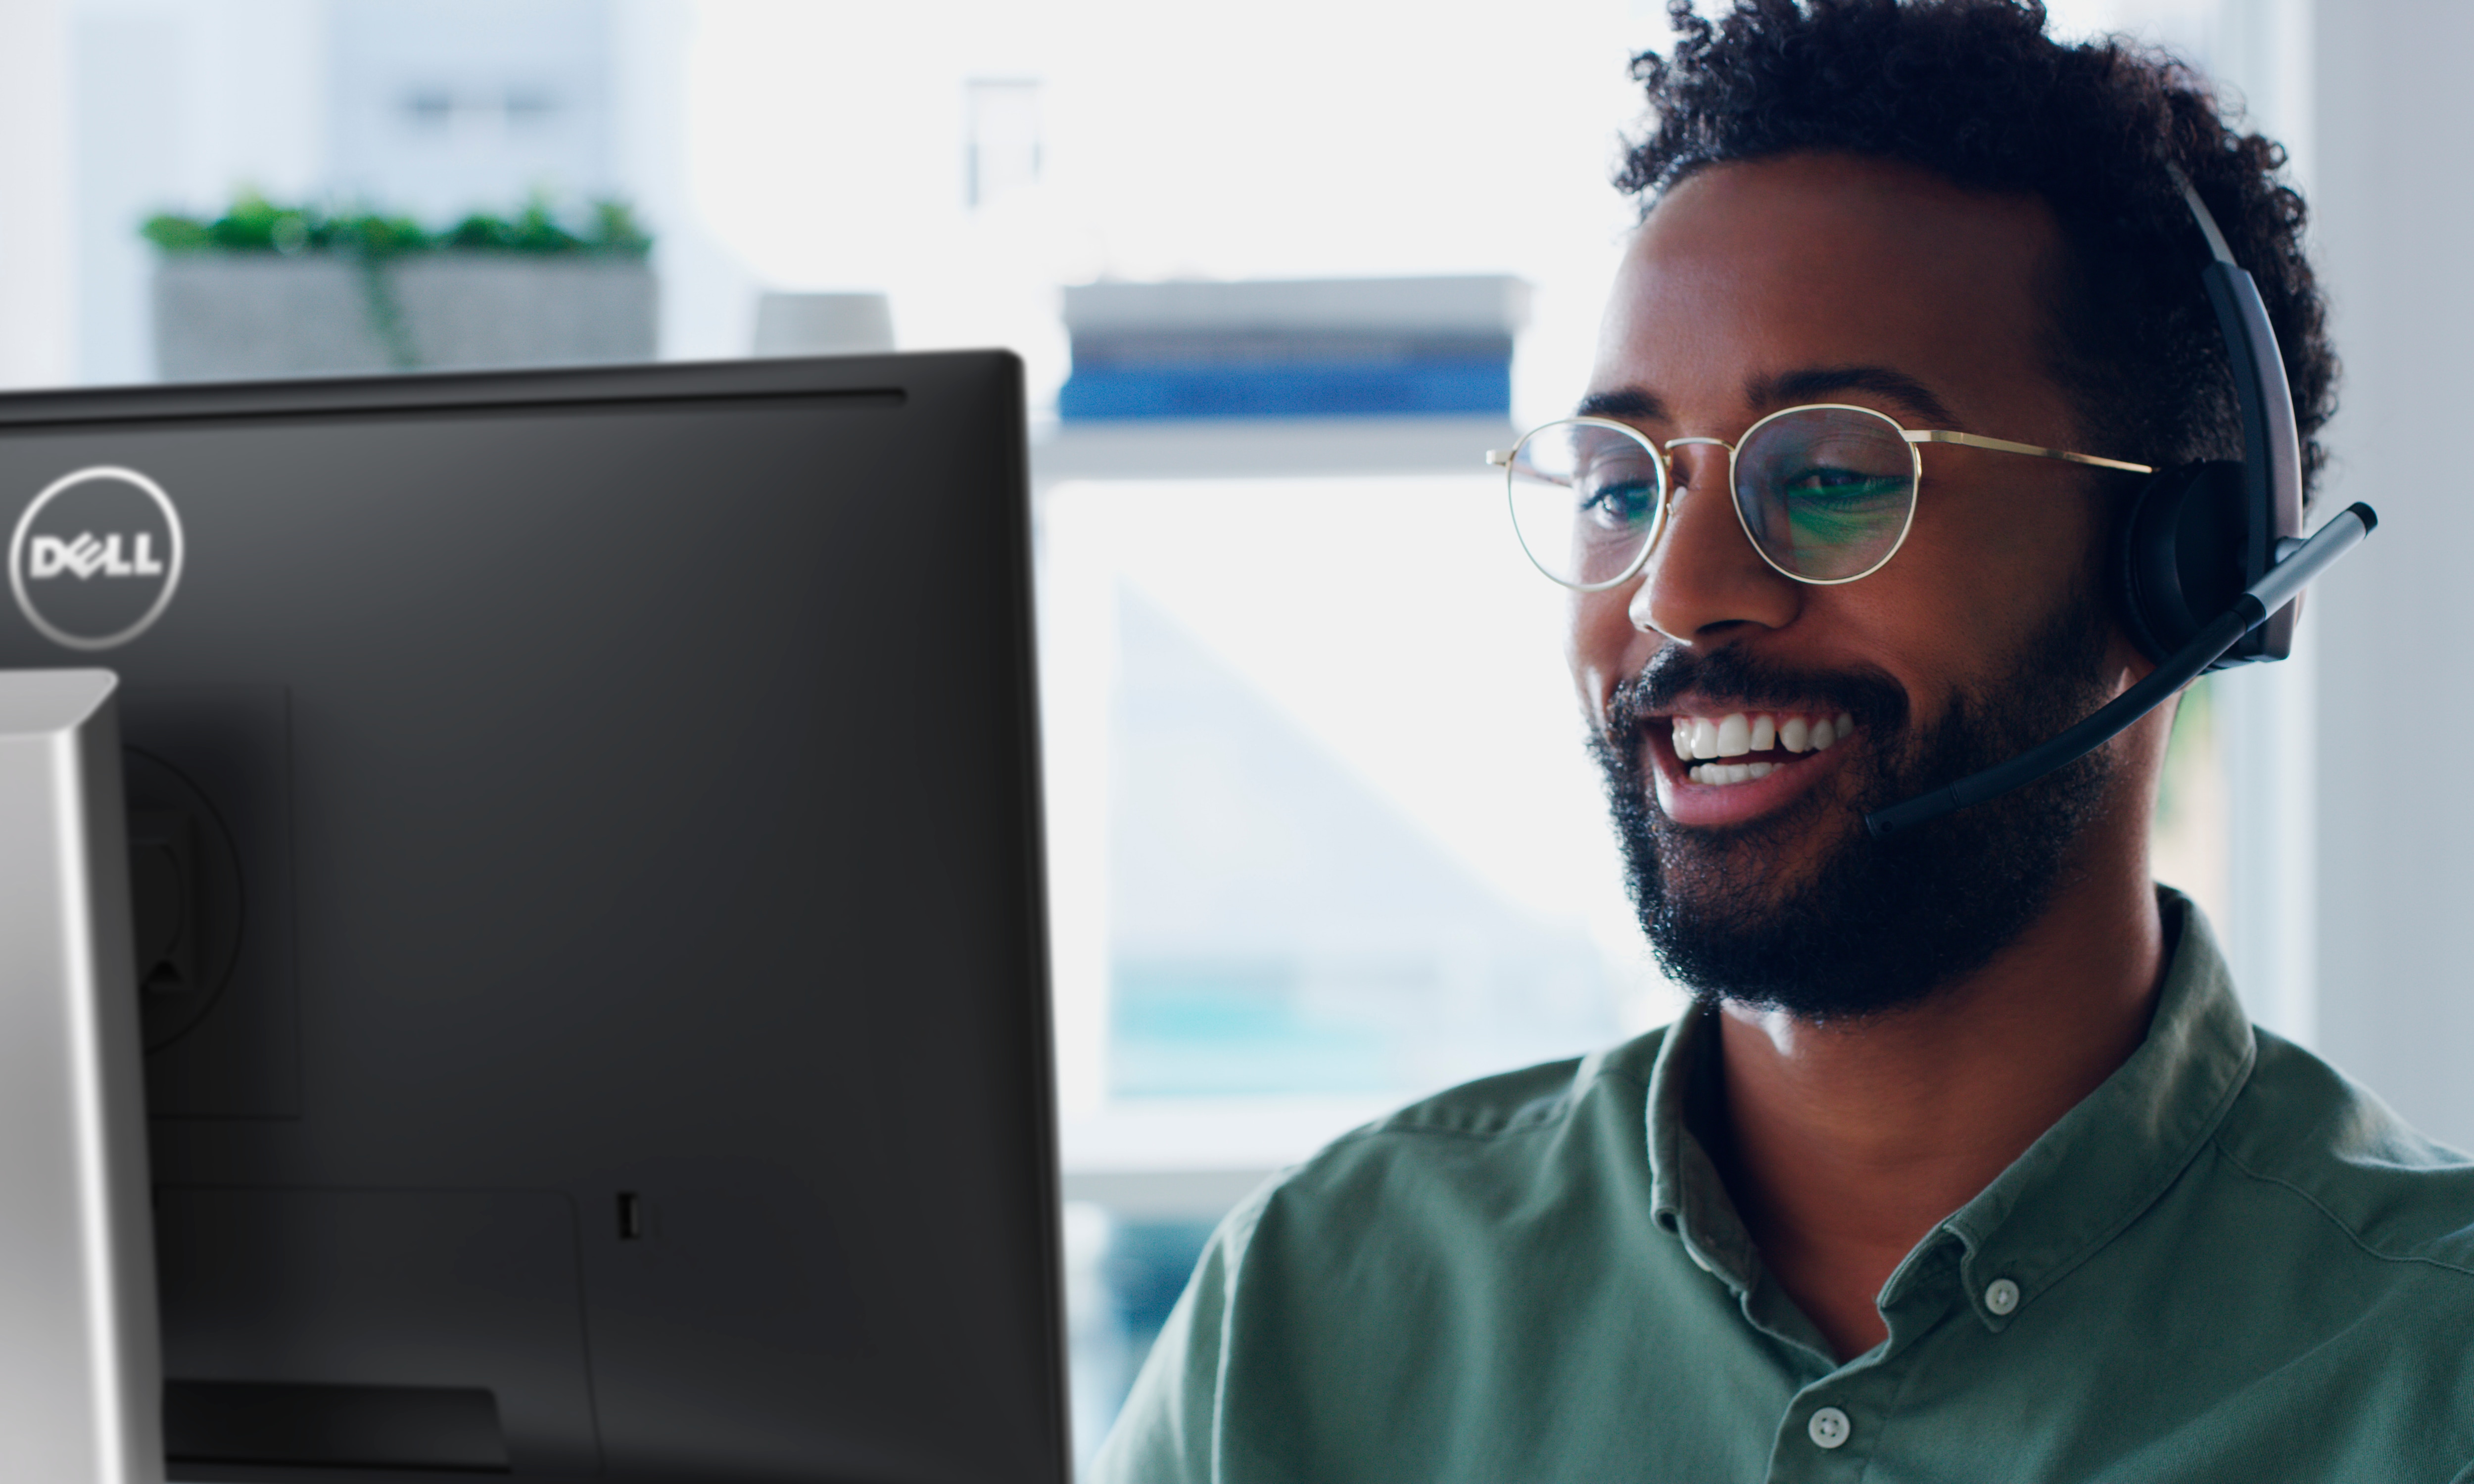 一位男士戴眼鏡且頭戴耳機，正在使用 Dell 顯示器，臉上帶著微笑。